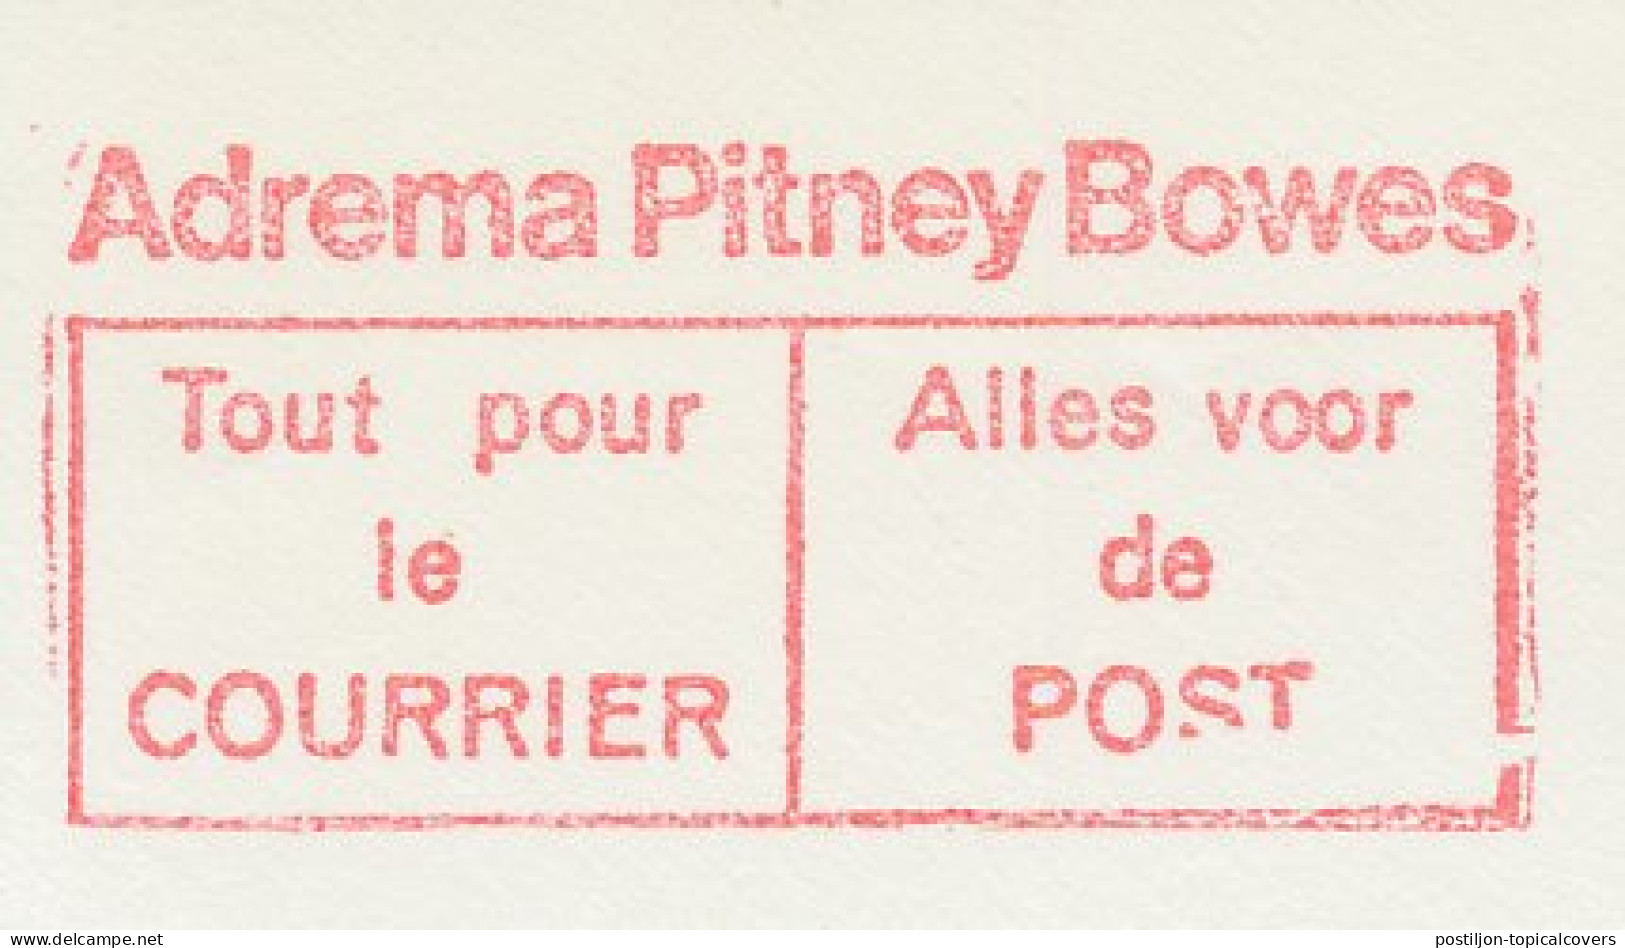 Meter Cut Belgium 1975 Pitney Bowes - Automaatzegels [ATM]